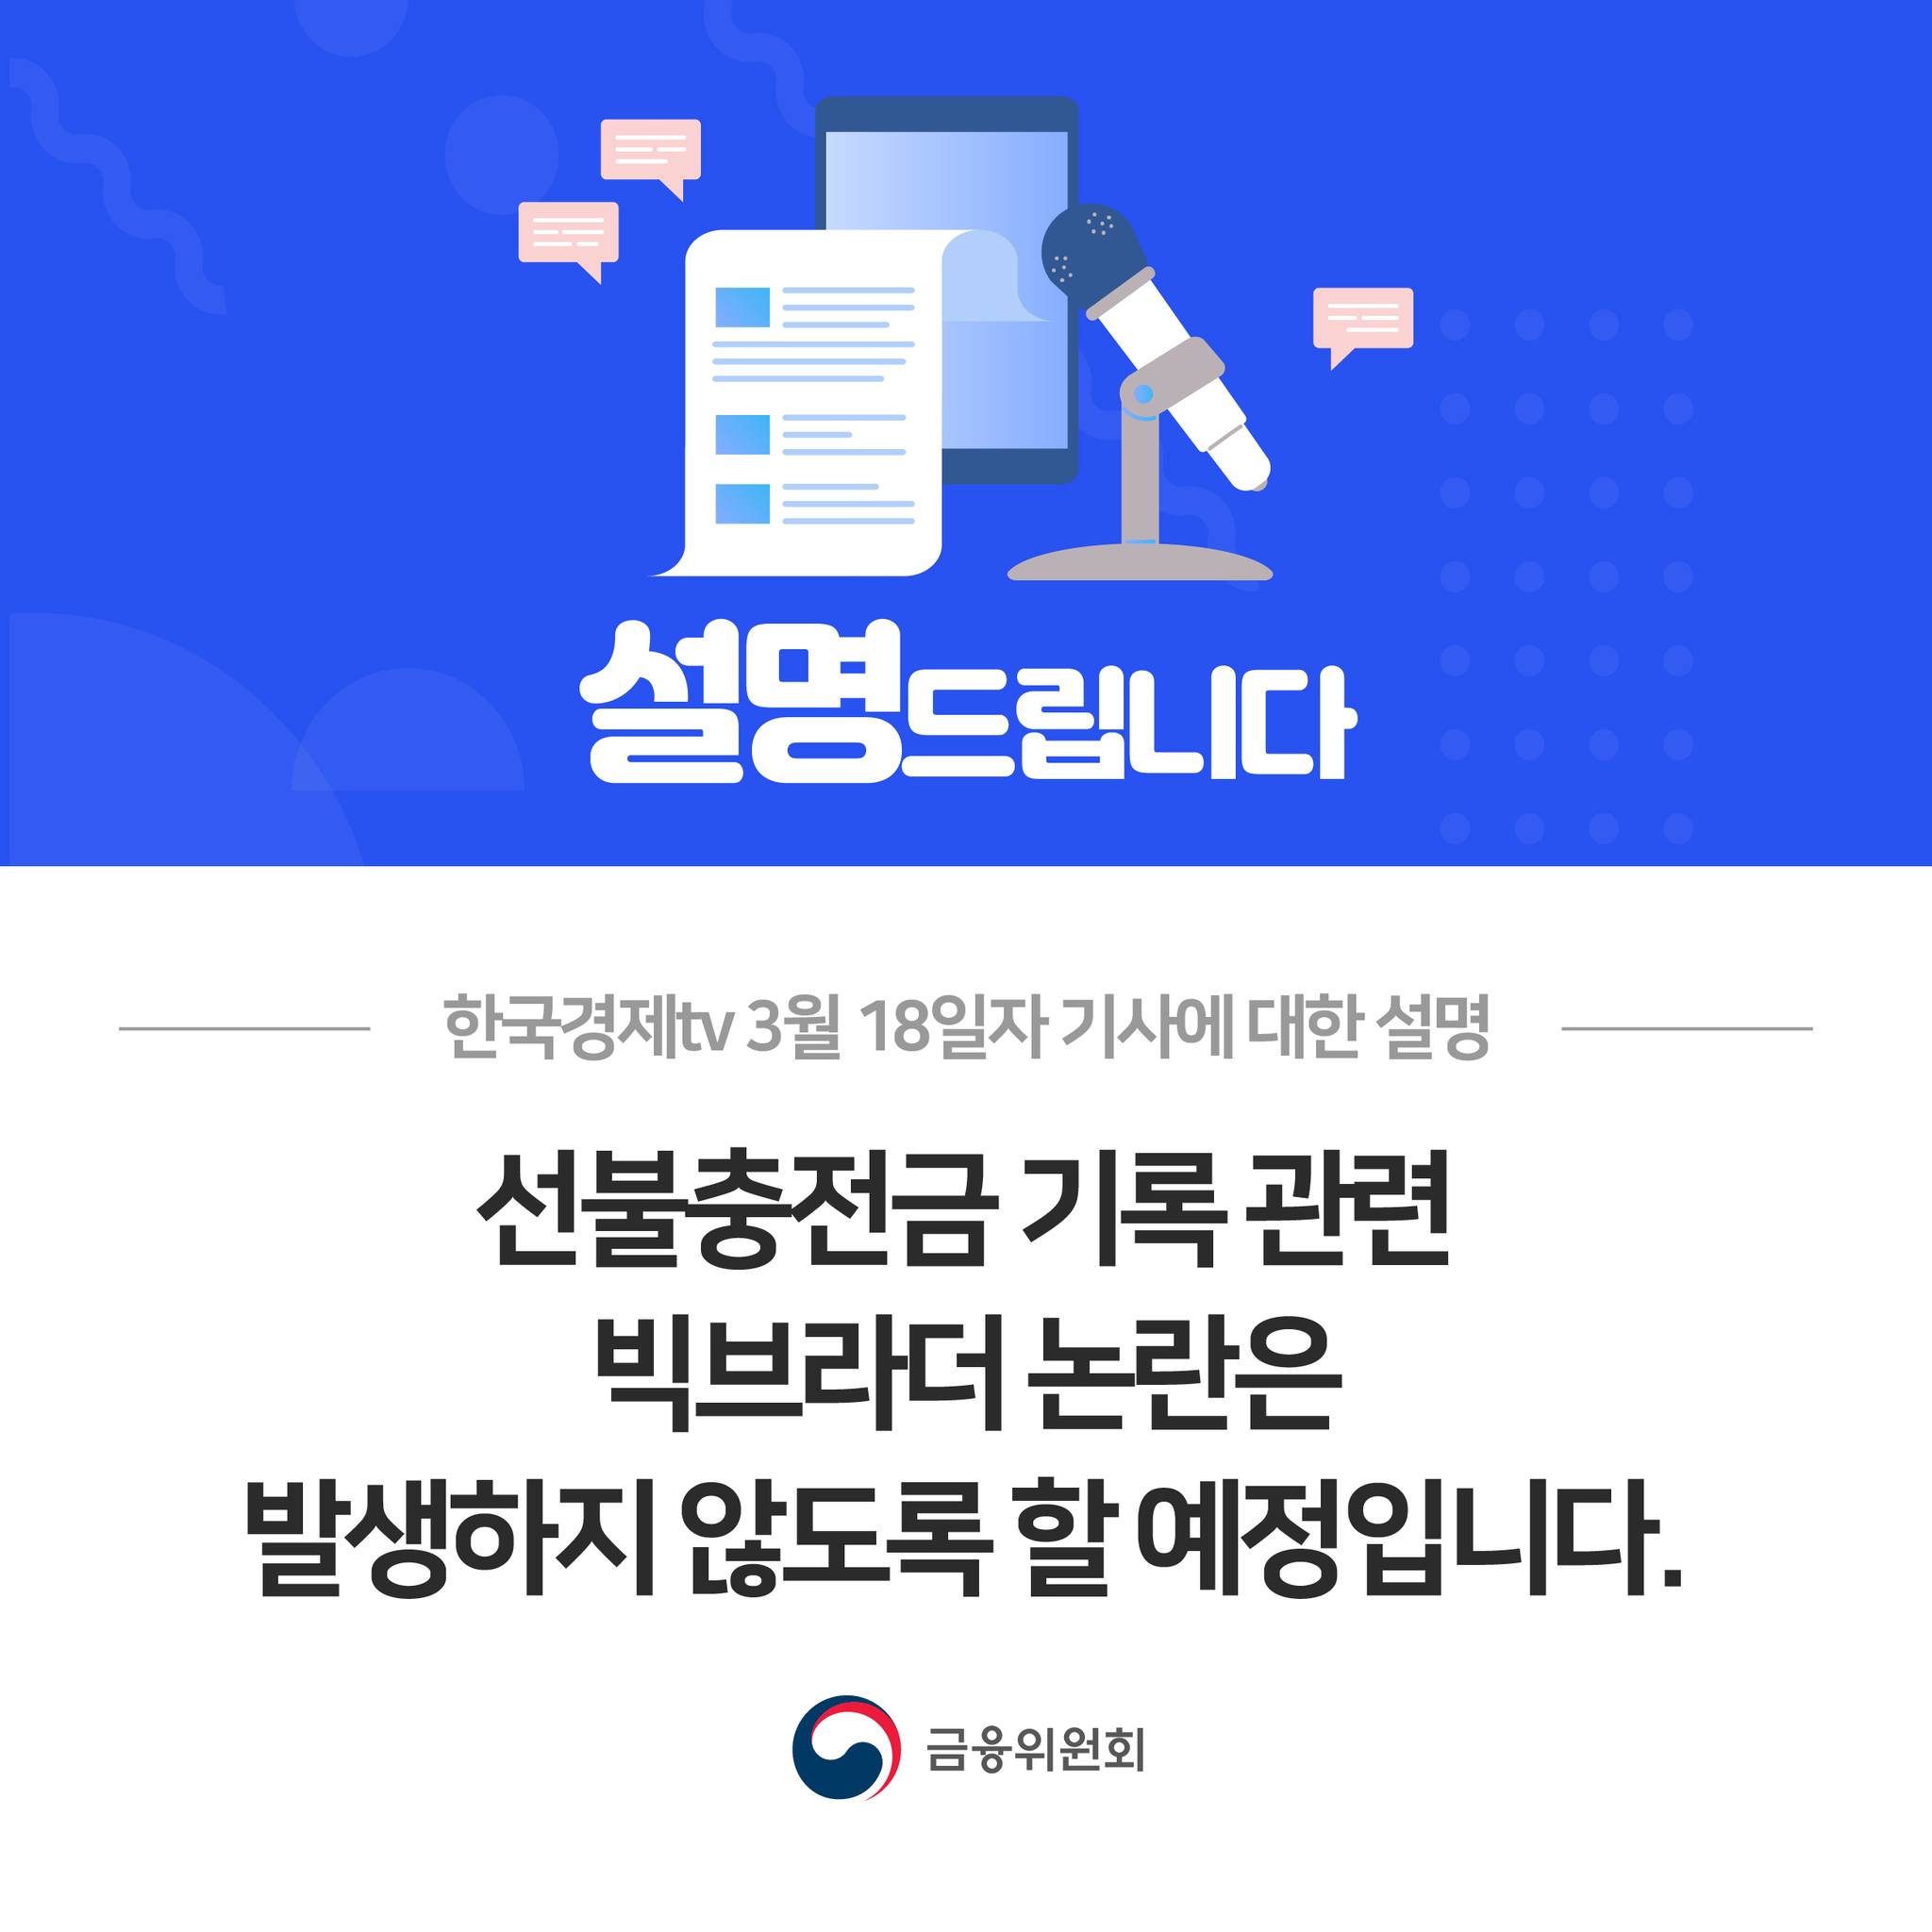 한국경제tv 3월 18일자 기사에 대한 설명. 선불충전금 기록 관련 빅브라더 논란은 발생하지 않도록 할 예정입니다.